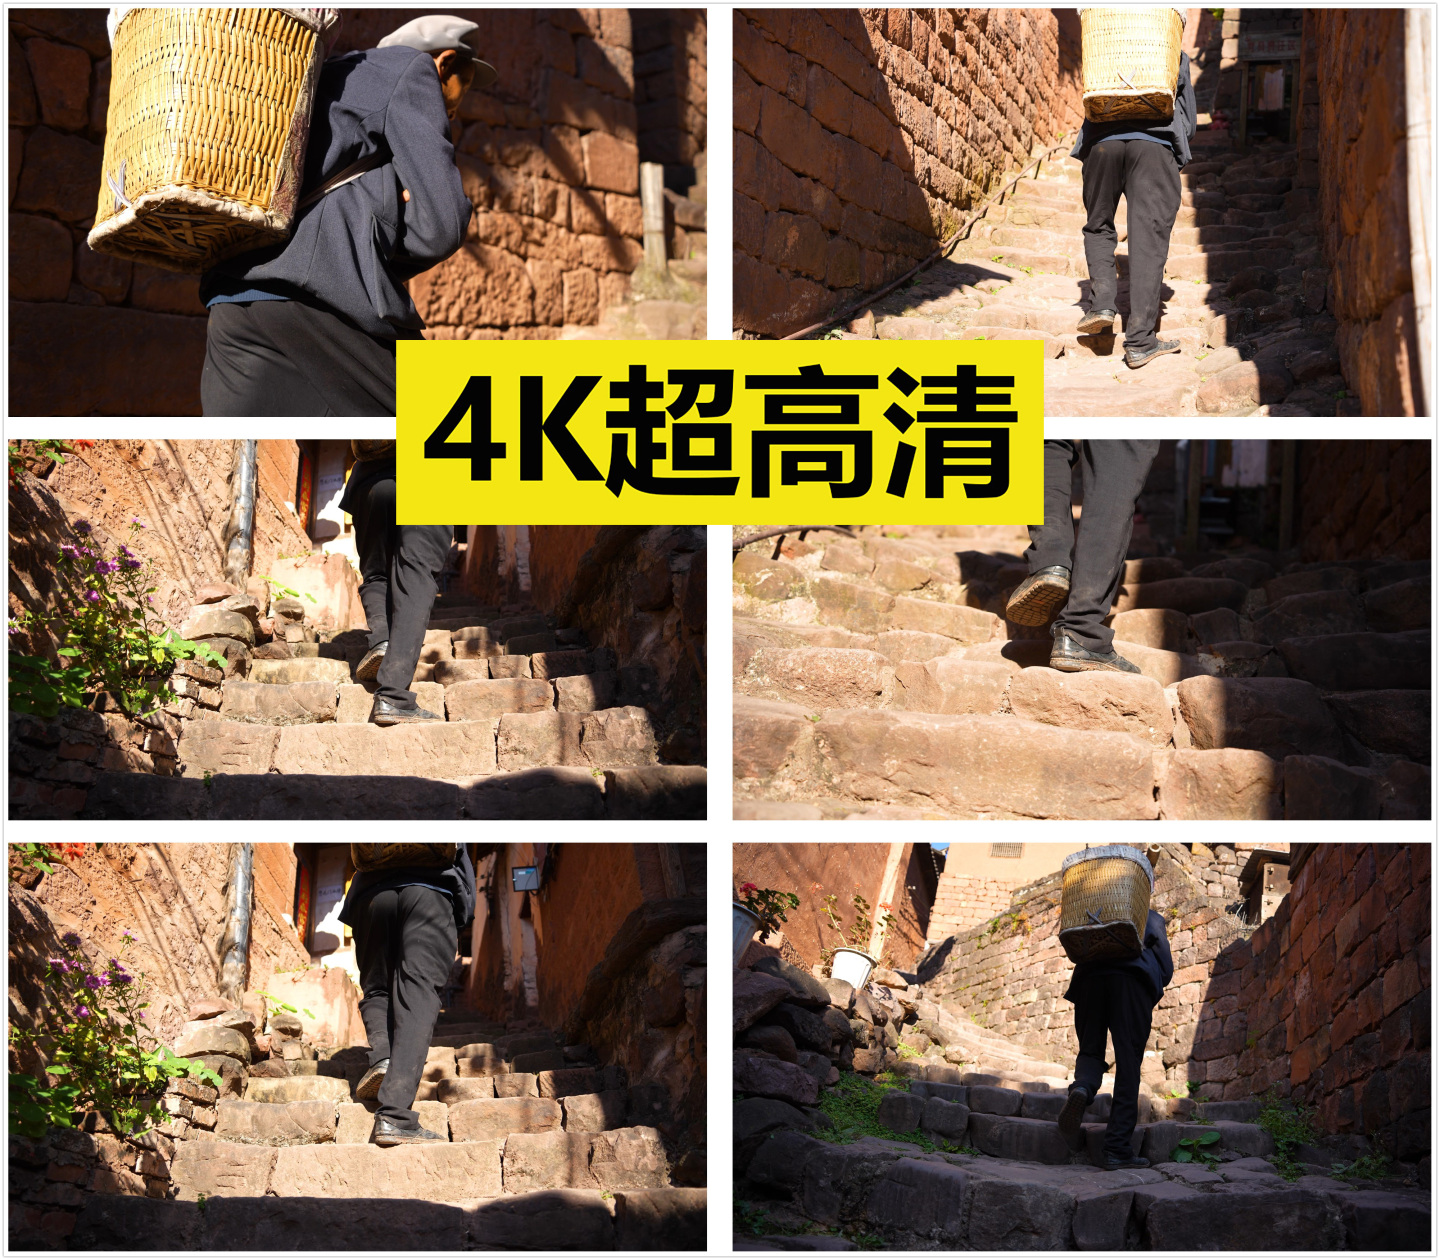 背着竹篓的老人走在青石板楼梯上【4K】